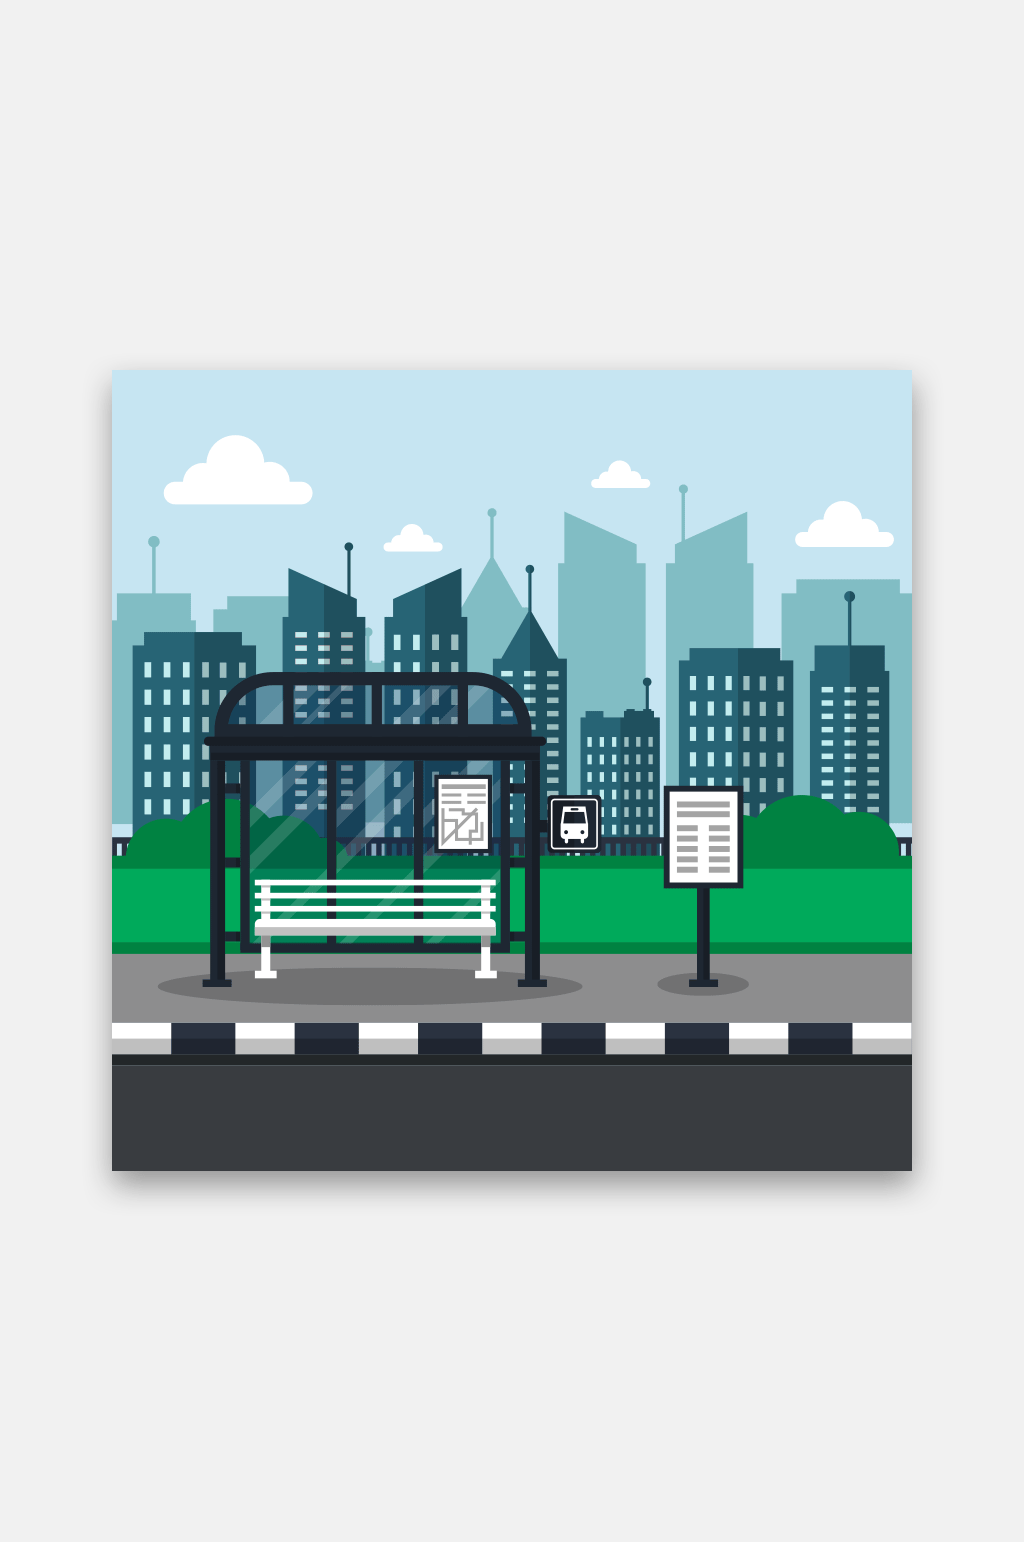 公交车站设计手绘图片